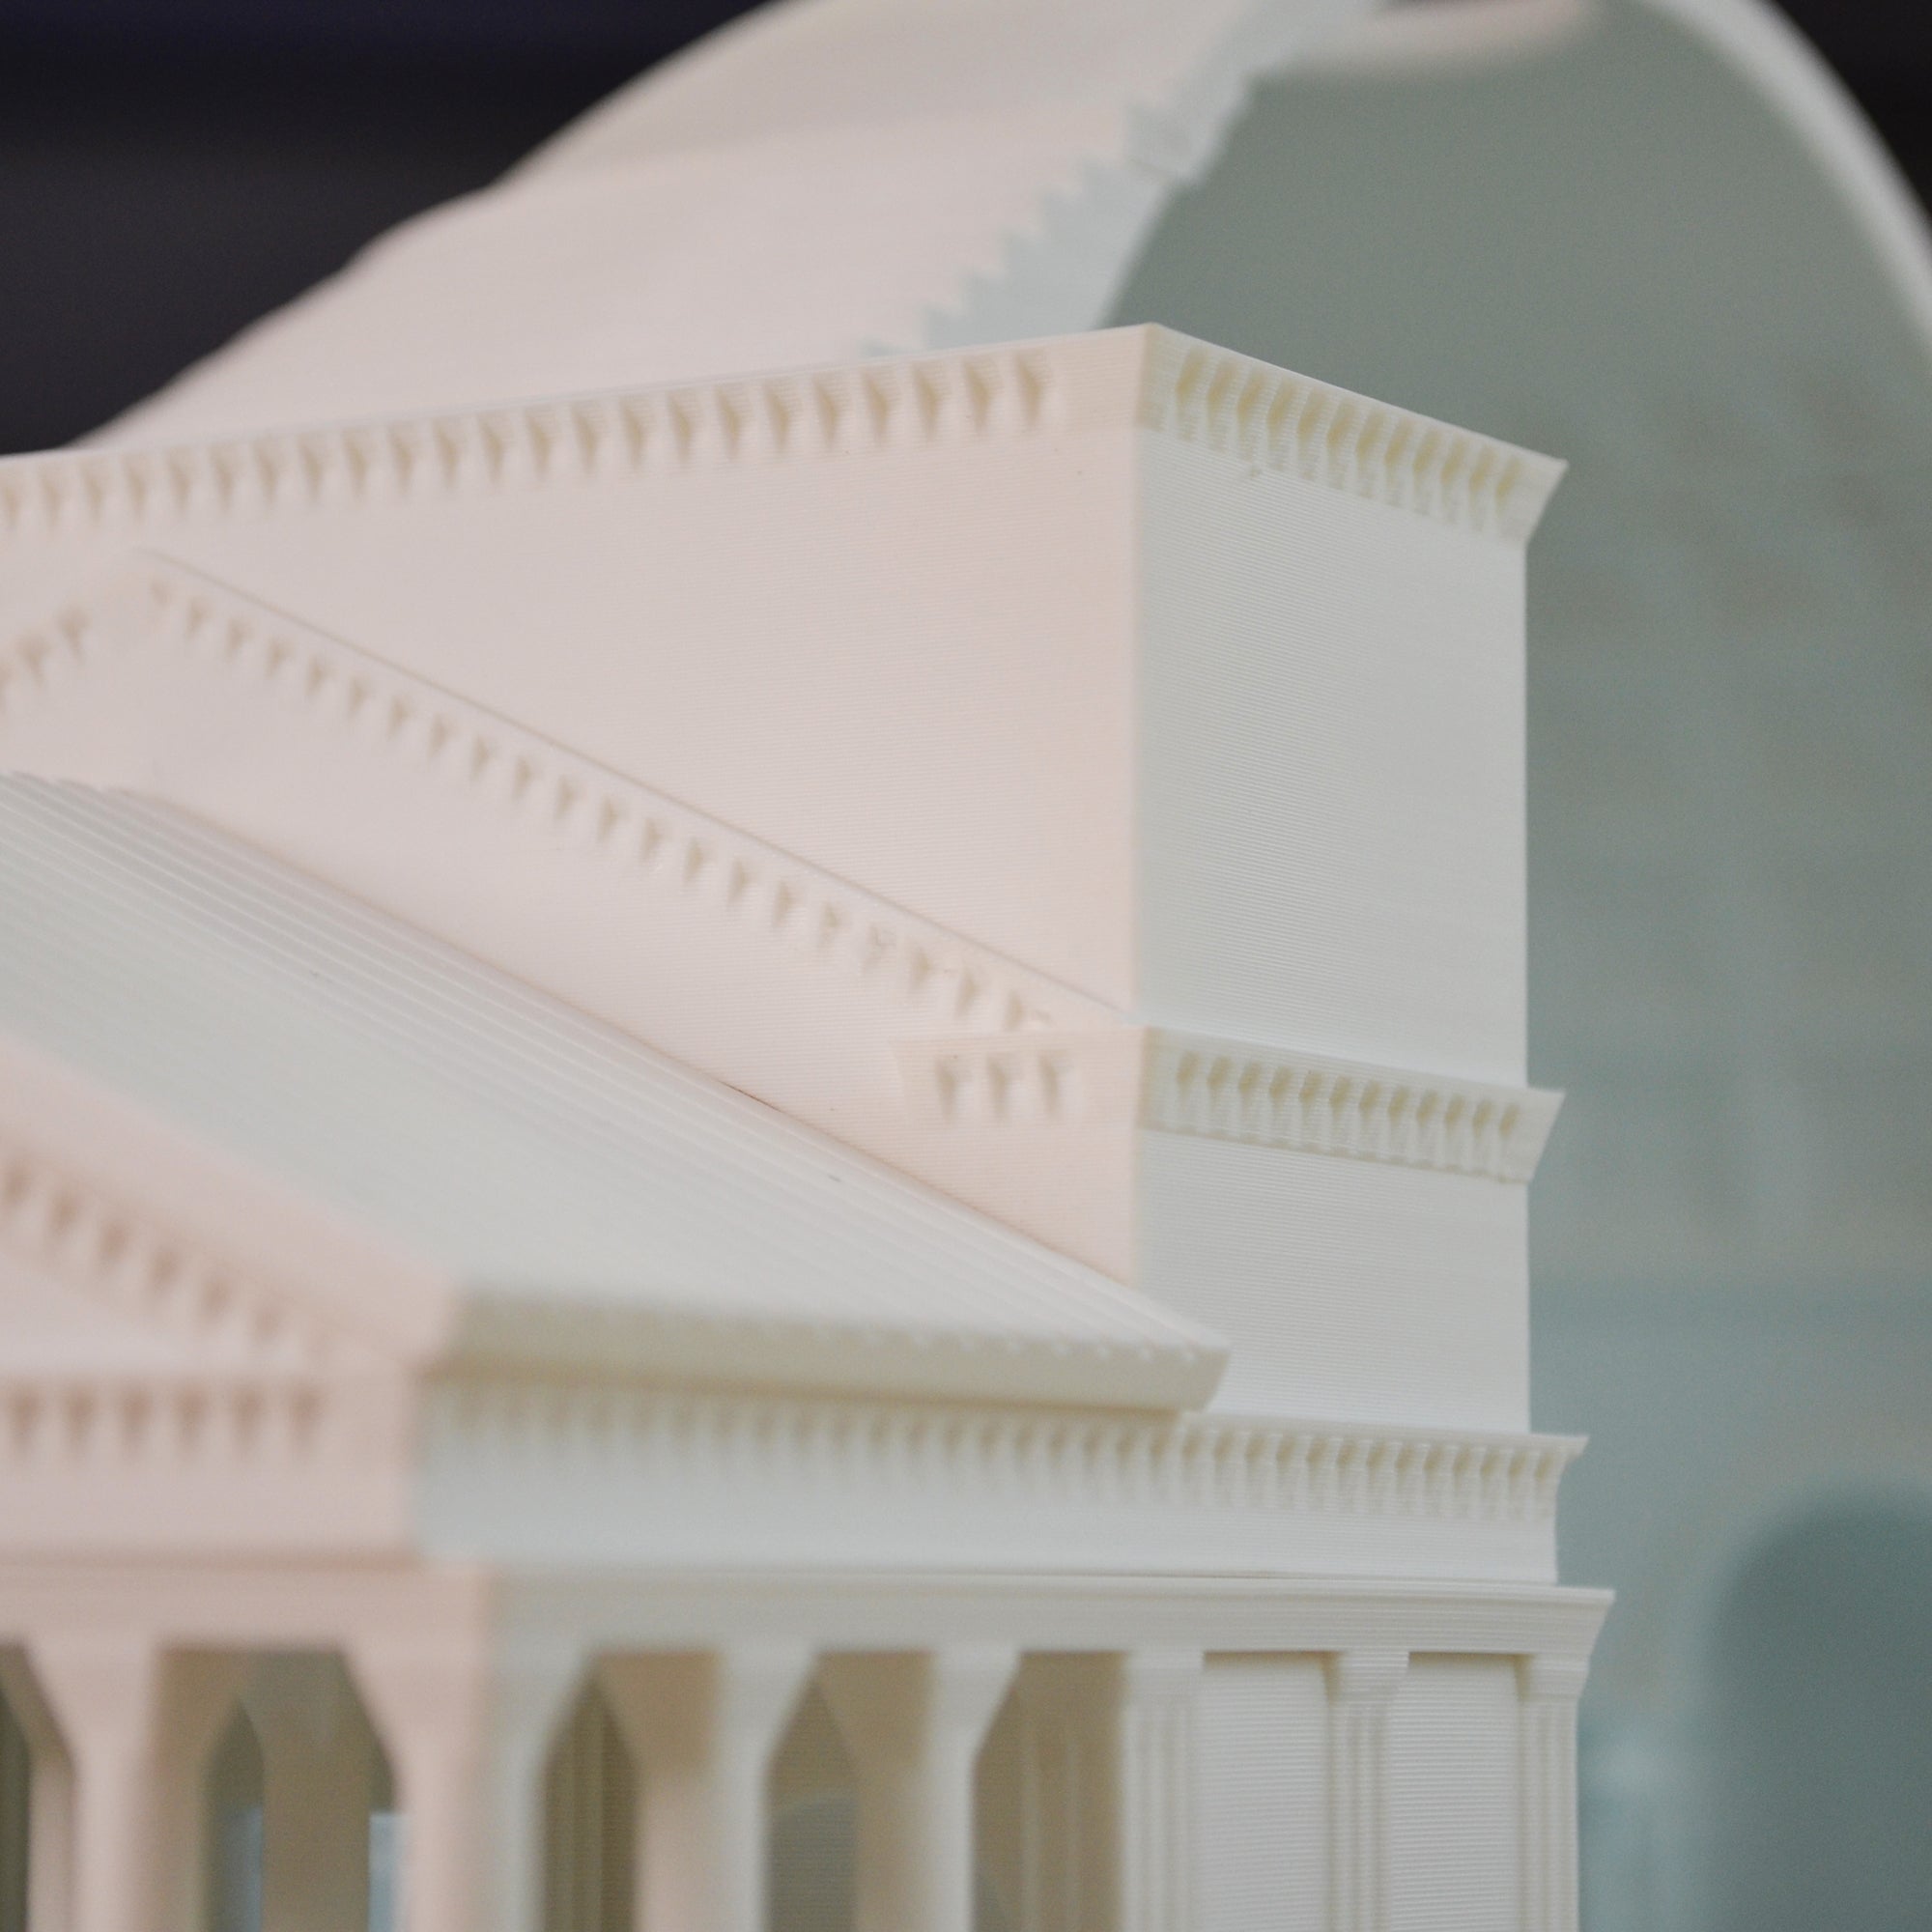 Modellino 3D del Pantheon: Esperienza Immersiva di Architettura e Design